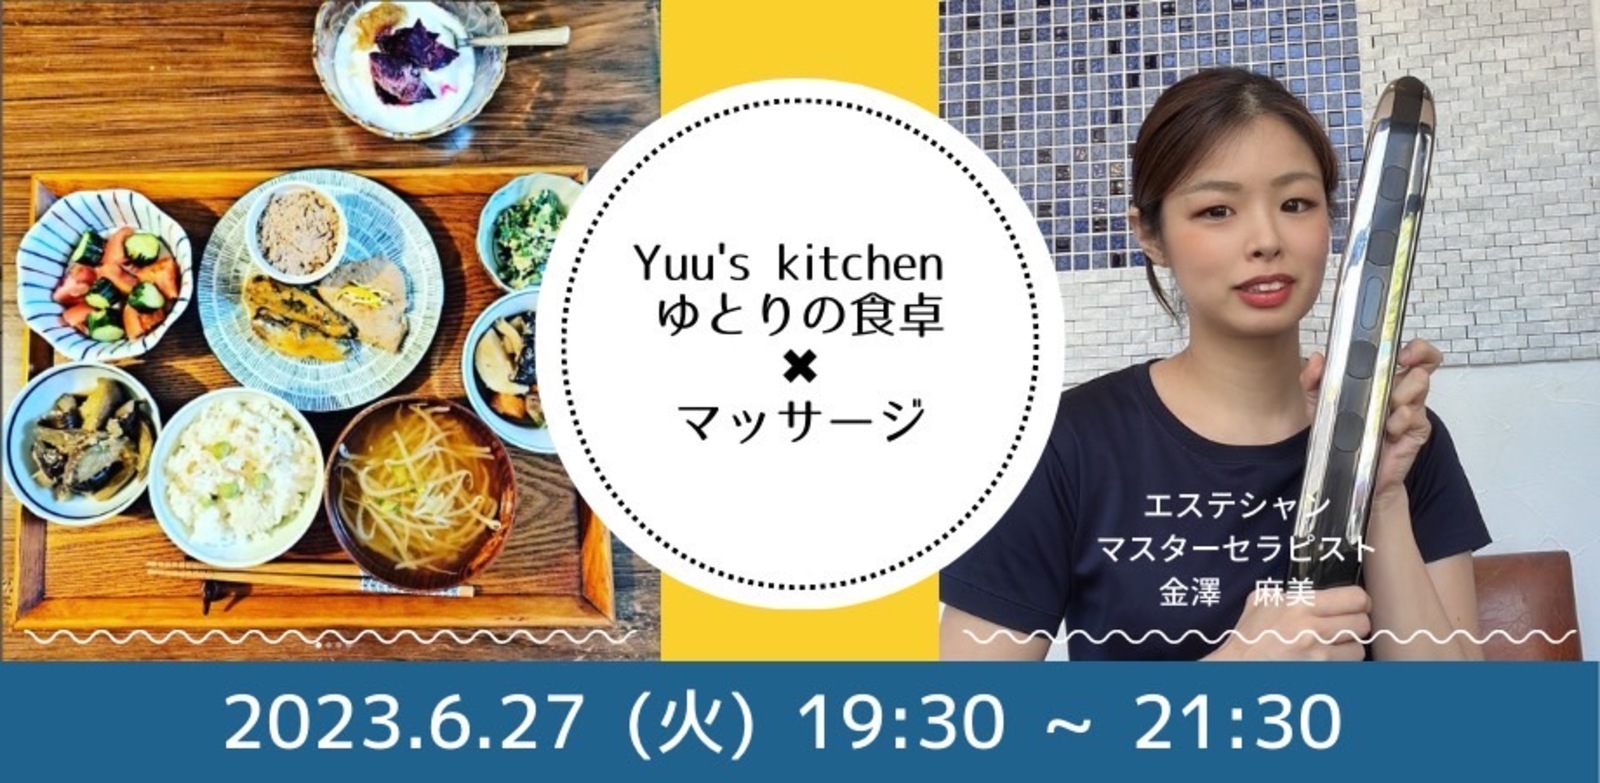 Yuu's kitchen ゆとりの食卓 Dinner×マッサージ